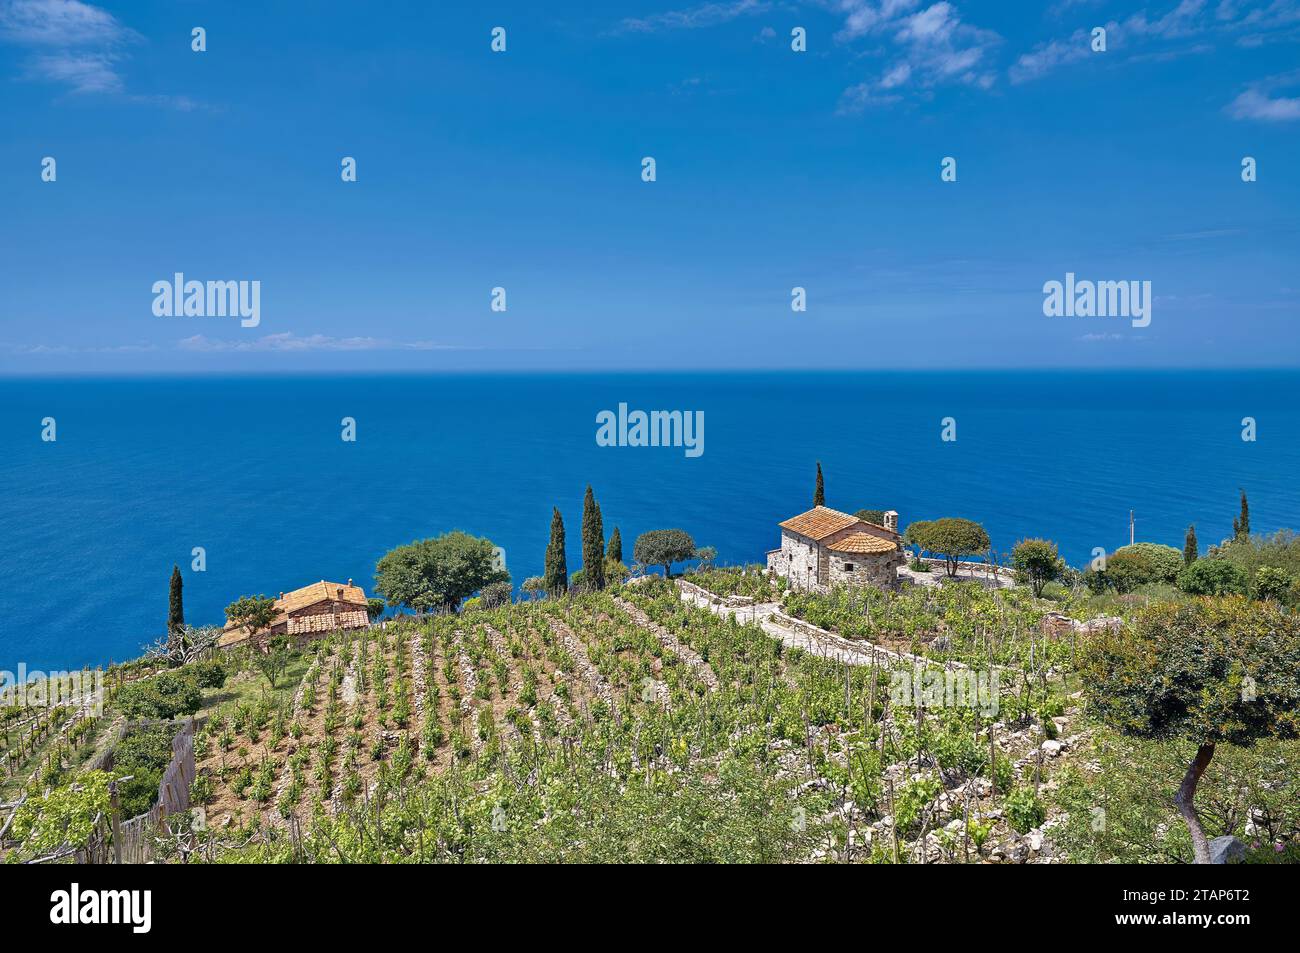 Vineyard Landscape at Coast of Island of Elba,Tuscany,Mediterranean Sea,Italy Stock Photo